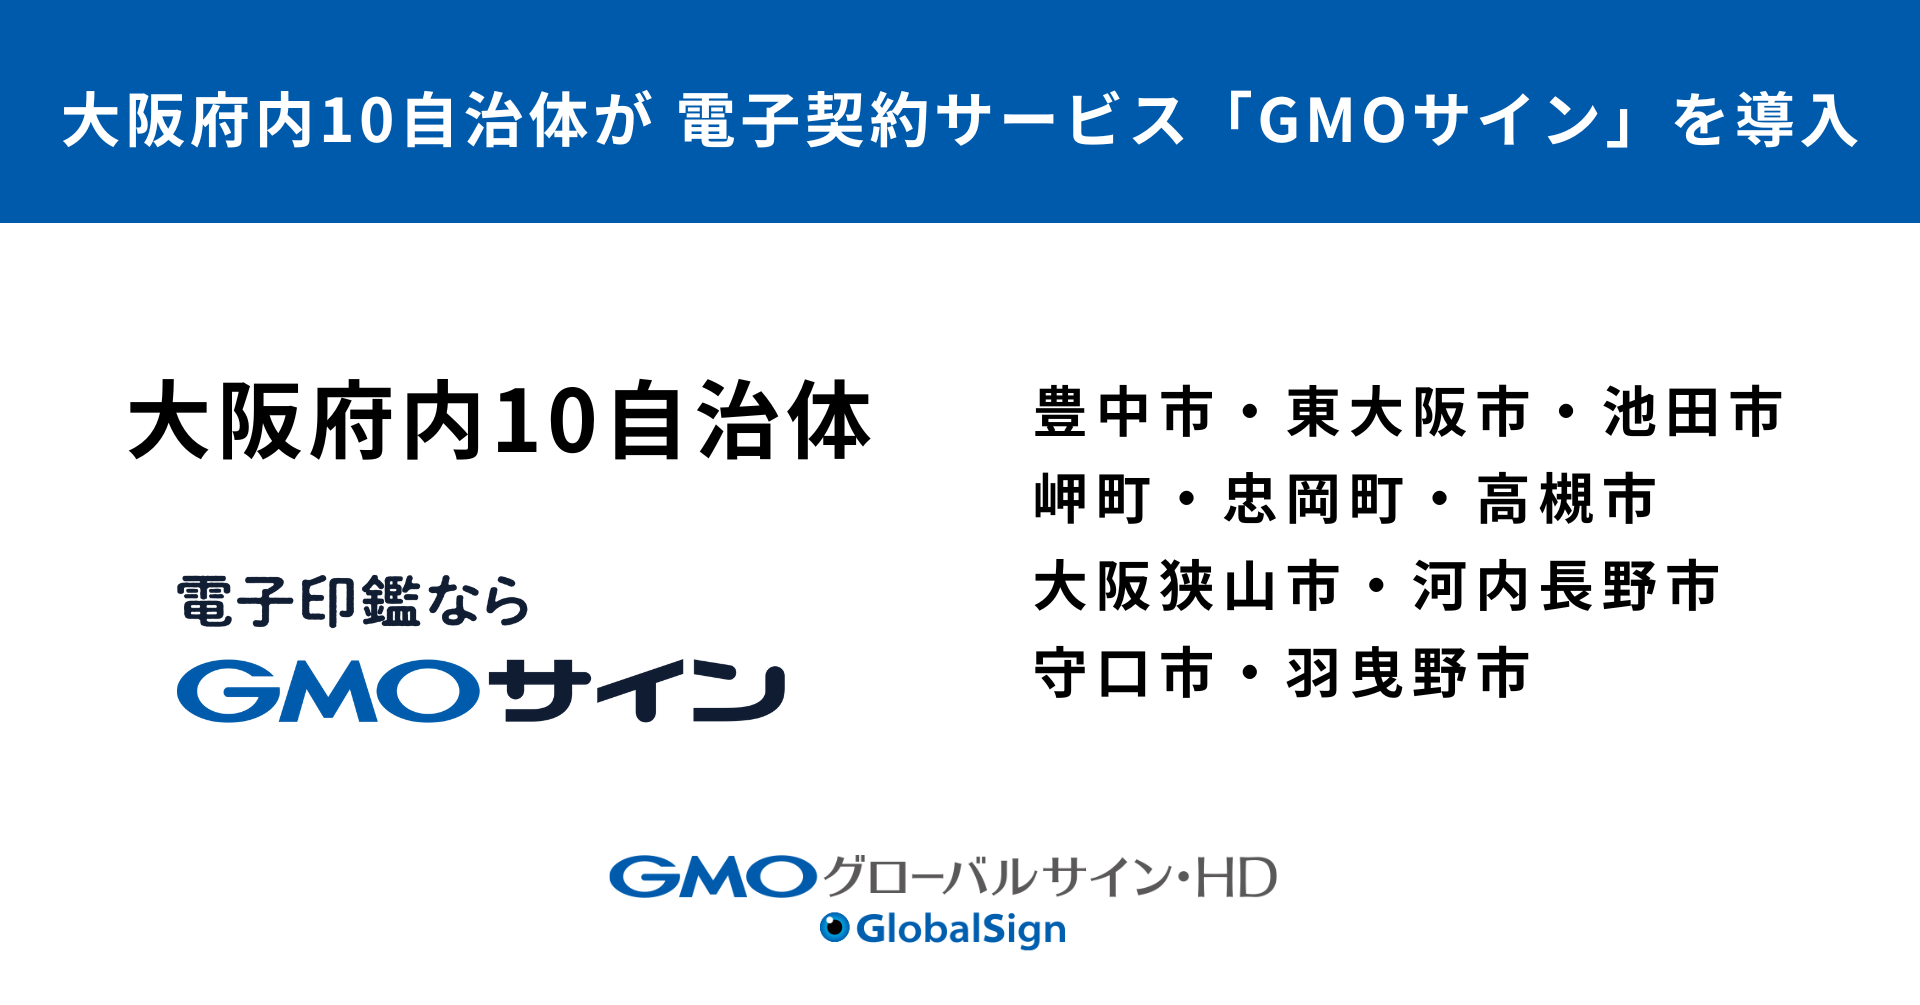 大阪府内10自治体が 電子契約サービス「GMOサイン」を導入